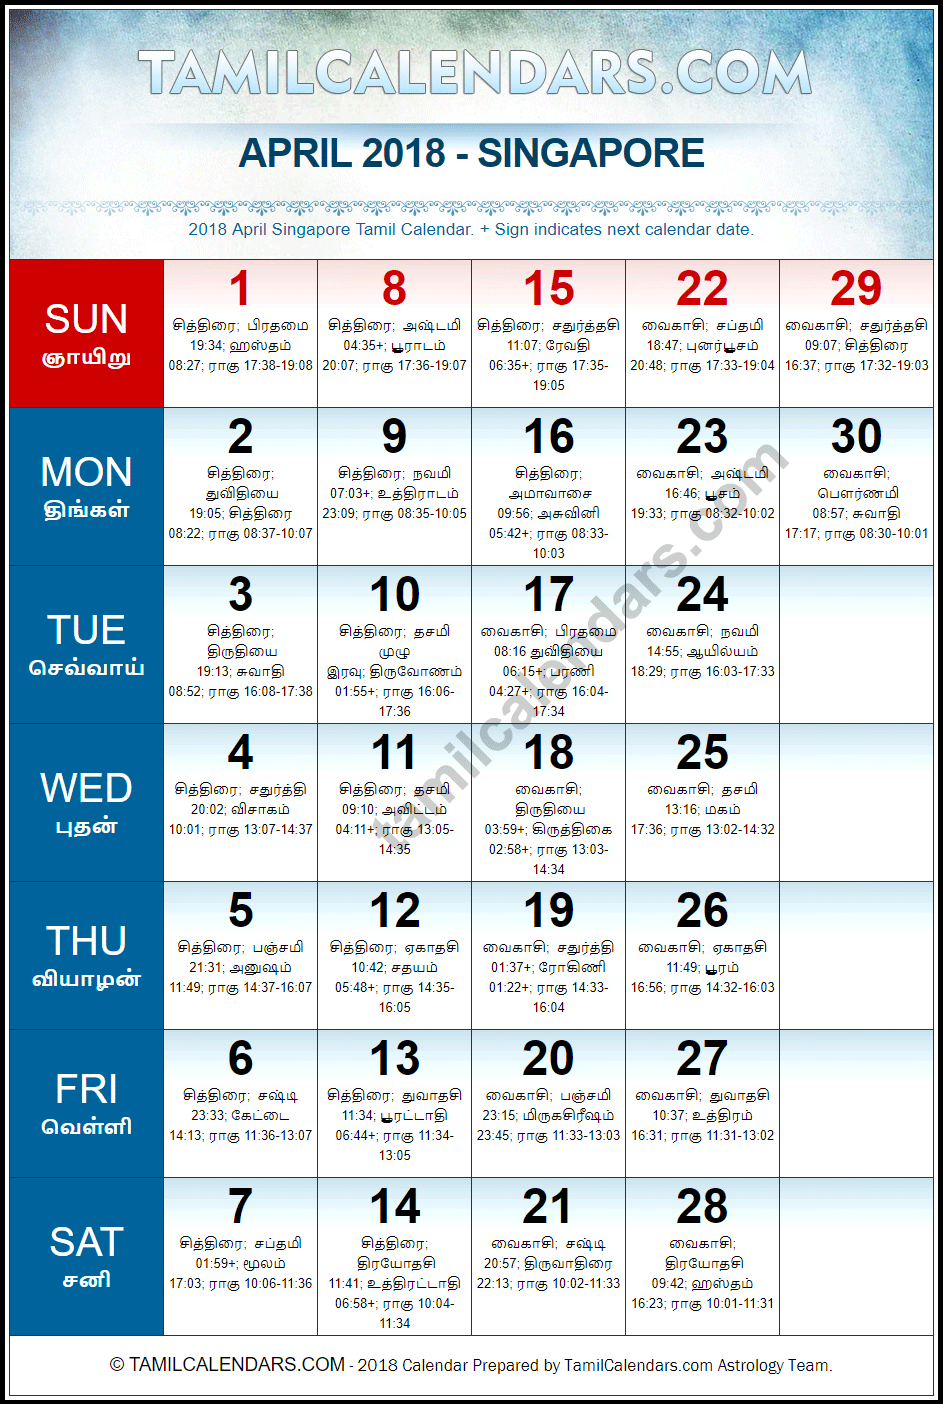 April 2018 Tamil Calendar for Singapore